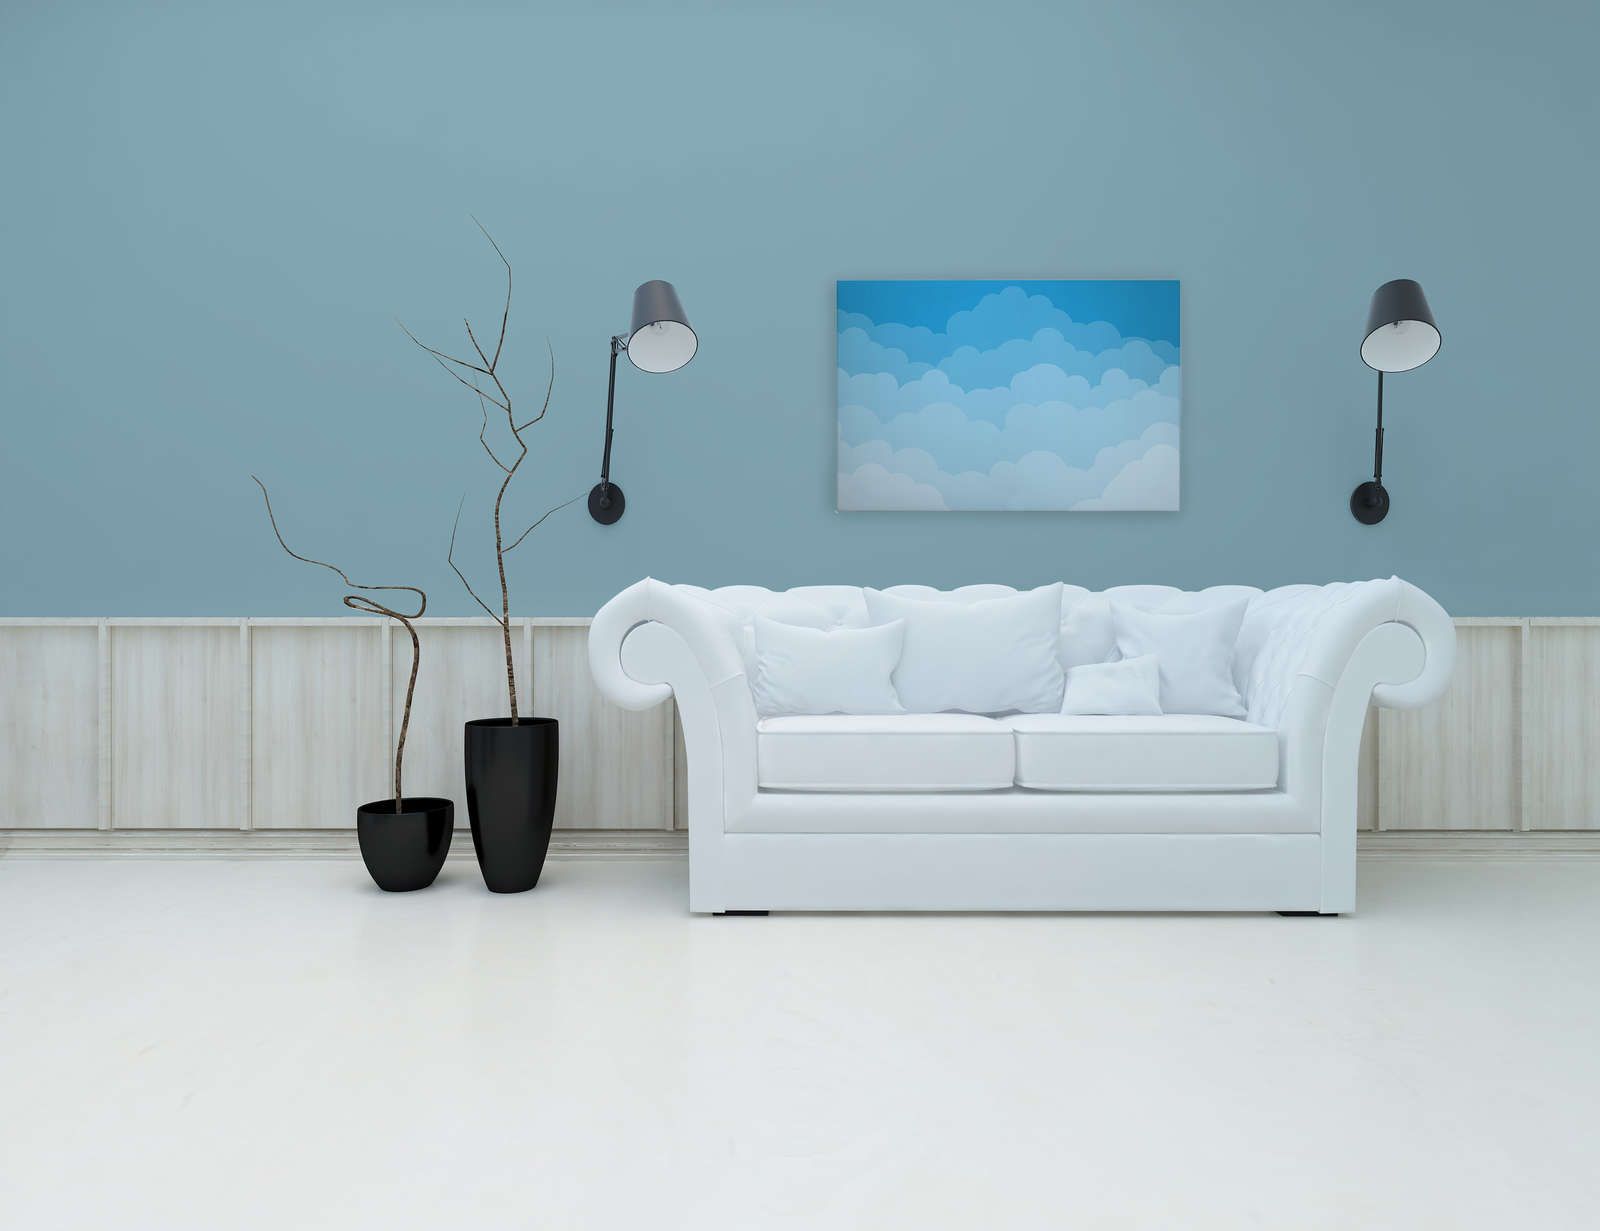             Canvas Lucht met wolken in stripstijl - 90 cm x 60 cm
        